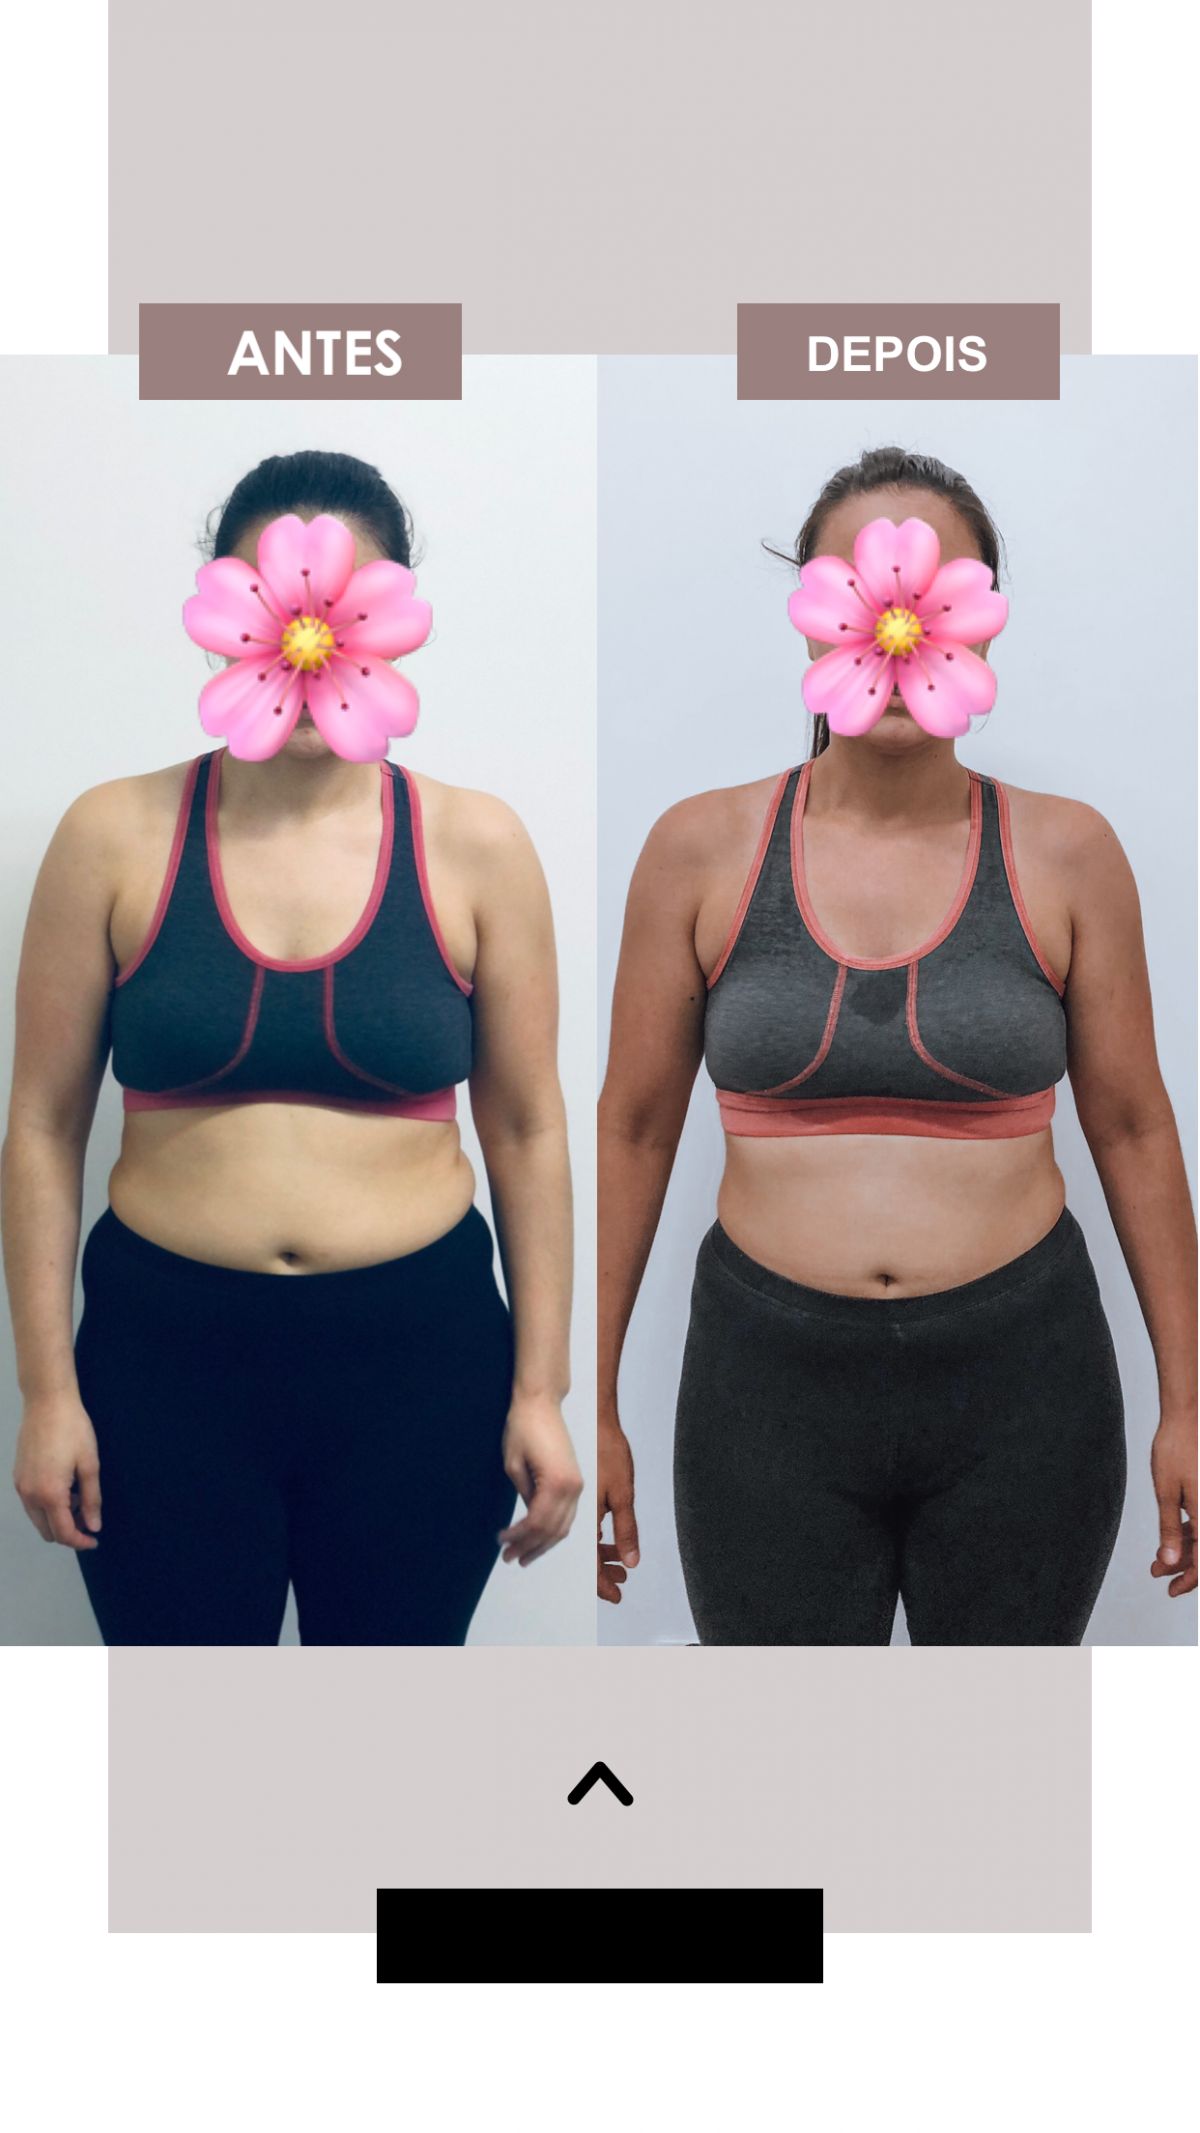 Helena Rodrigues - Vila Nova de Famalicão - Personal Training e Fitness